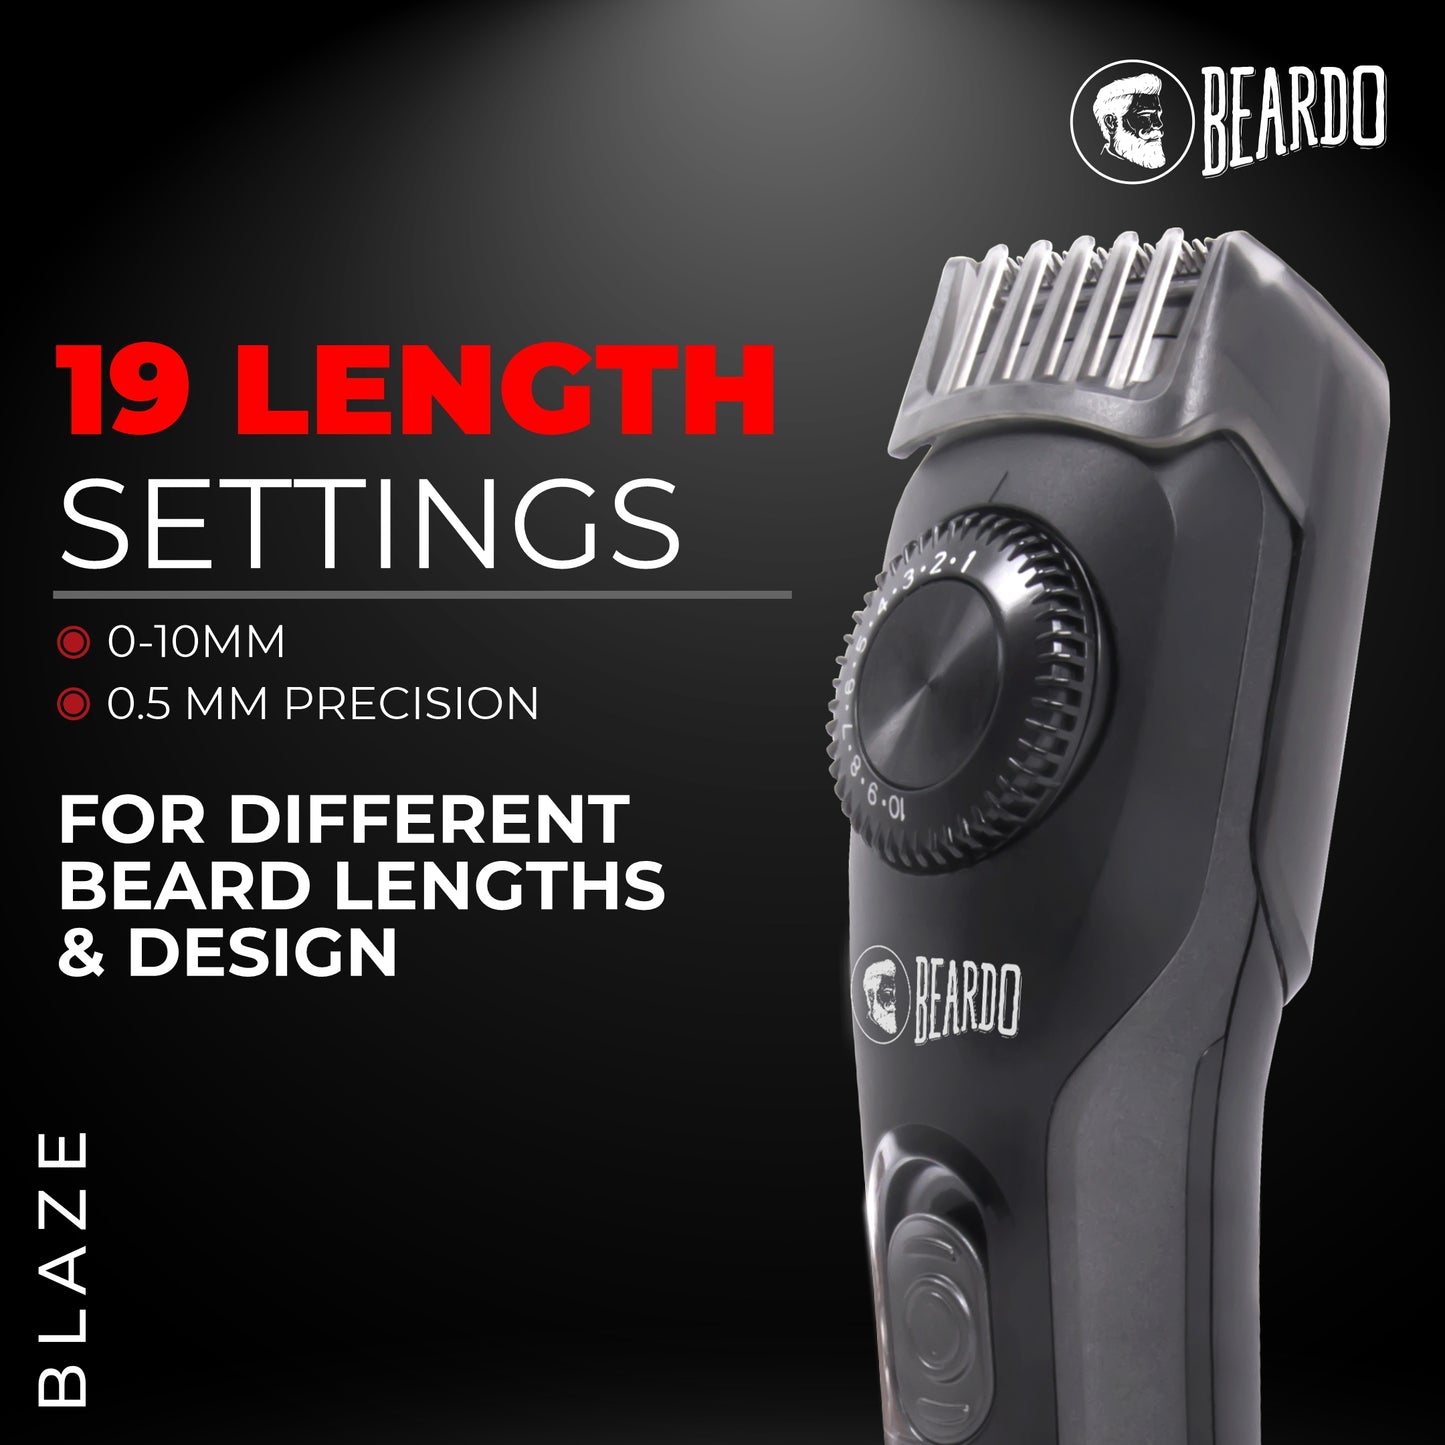 est trimmer for men, beard trimmer for men, body trimmer for men